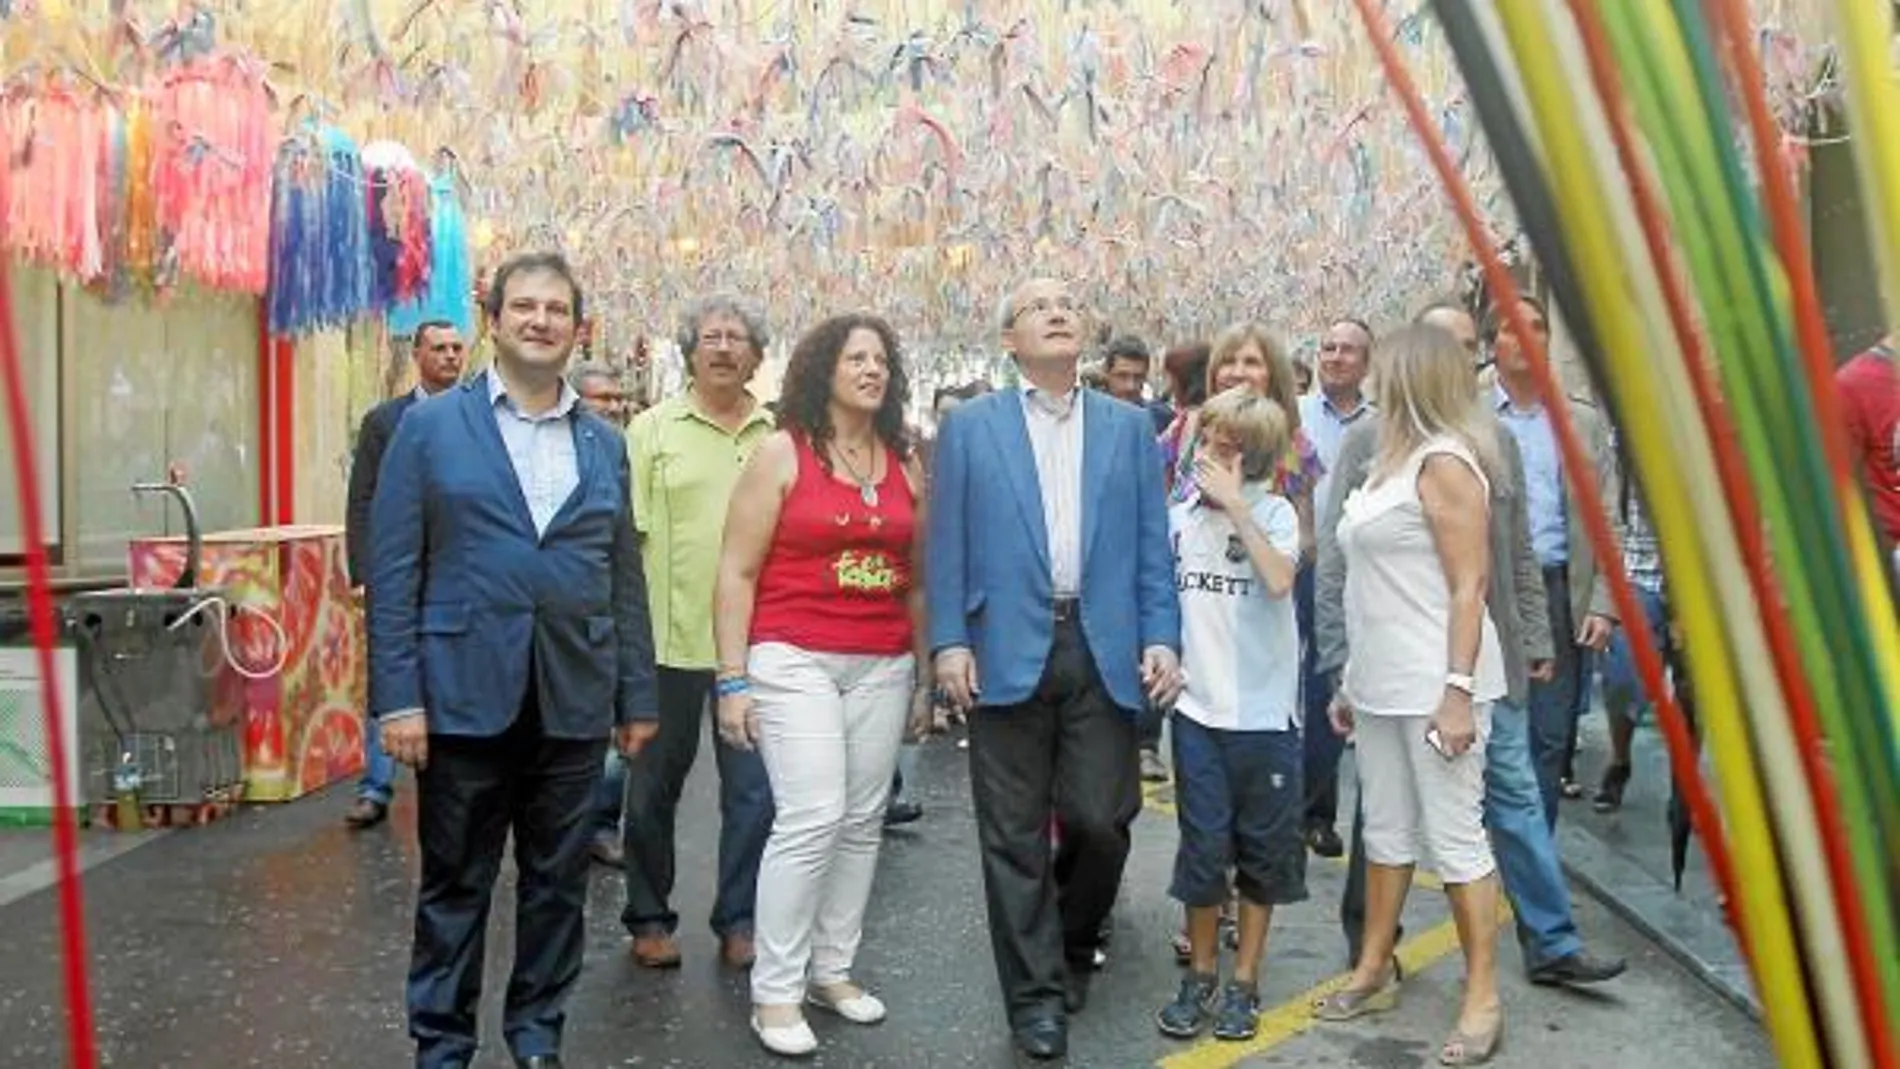 El presidente Montilla junto a su familia y el alcalde Hereu, ayer en el barrio de Gràcia de Barcelona